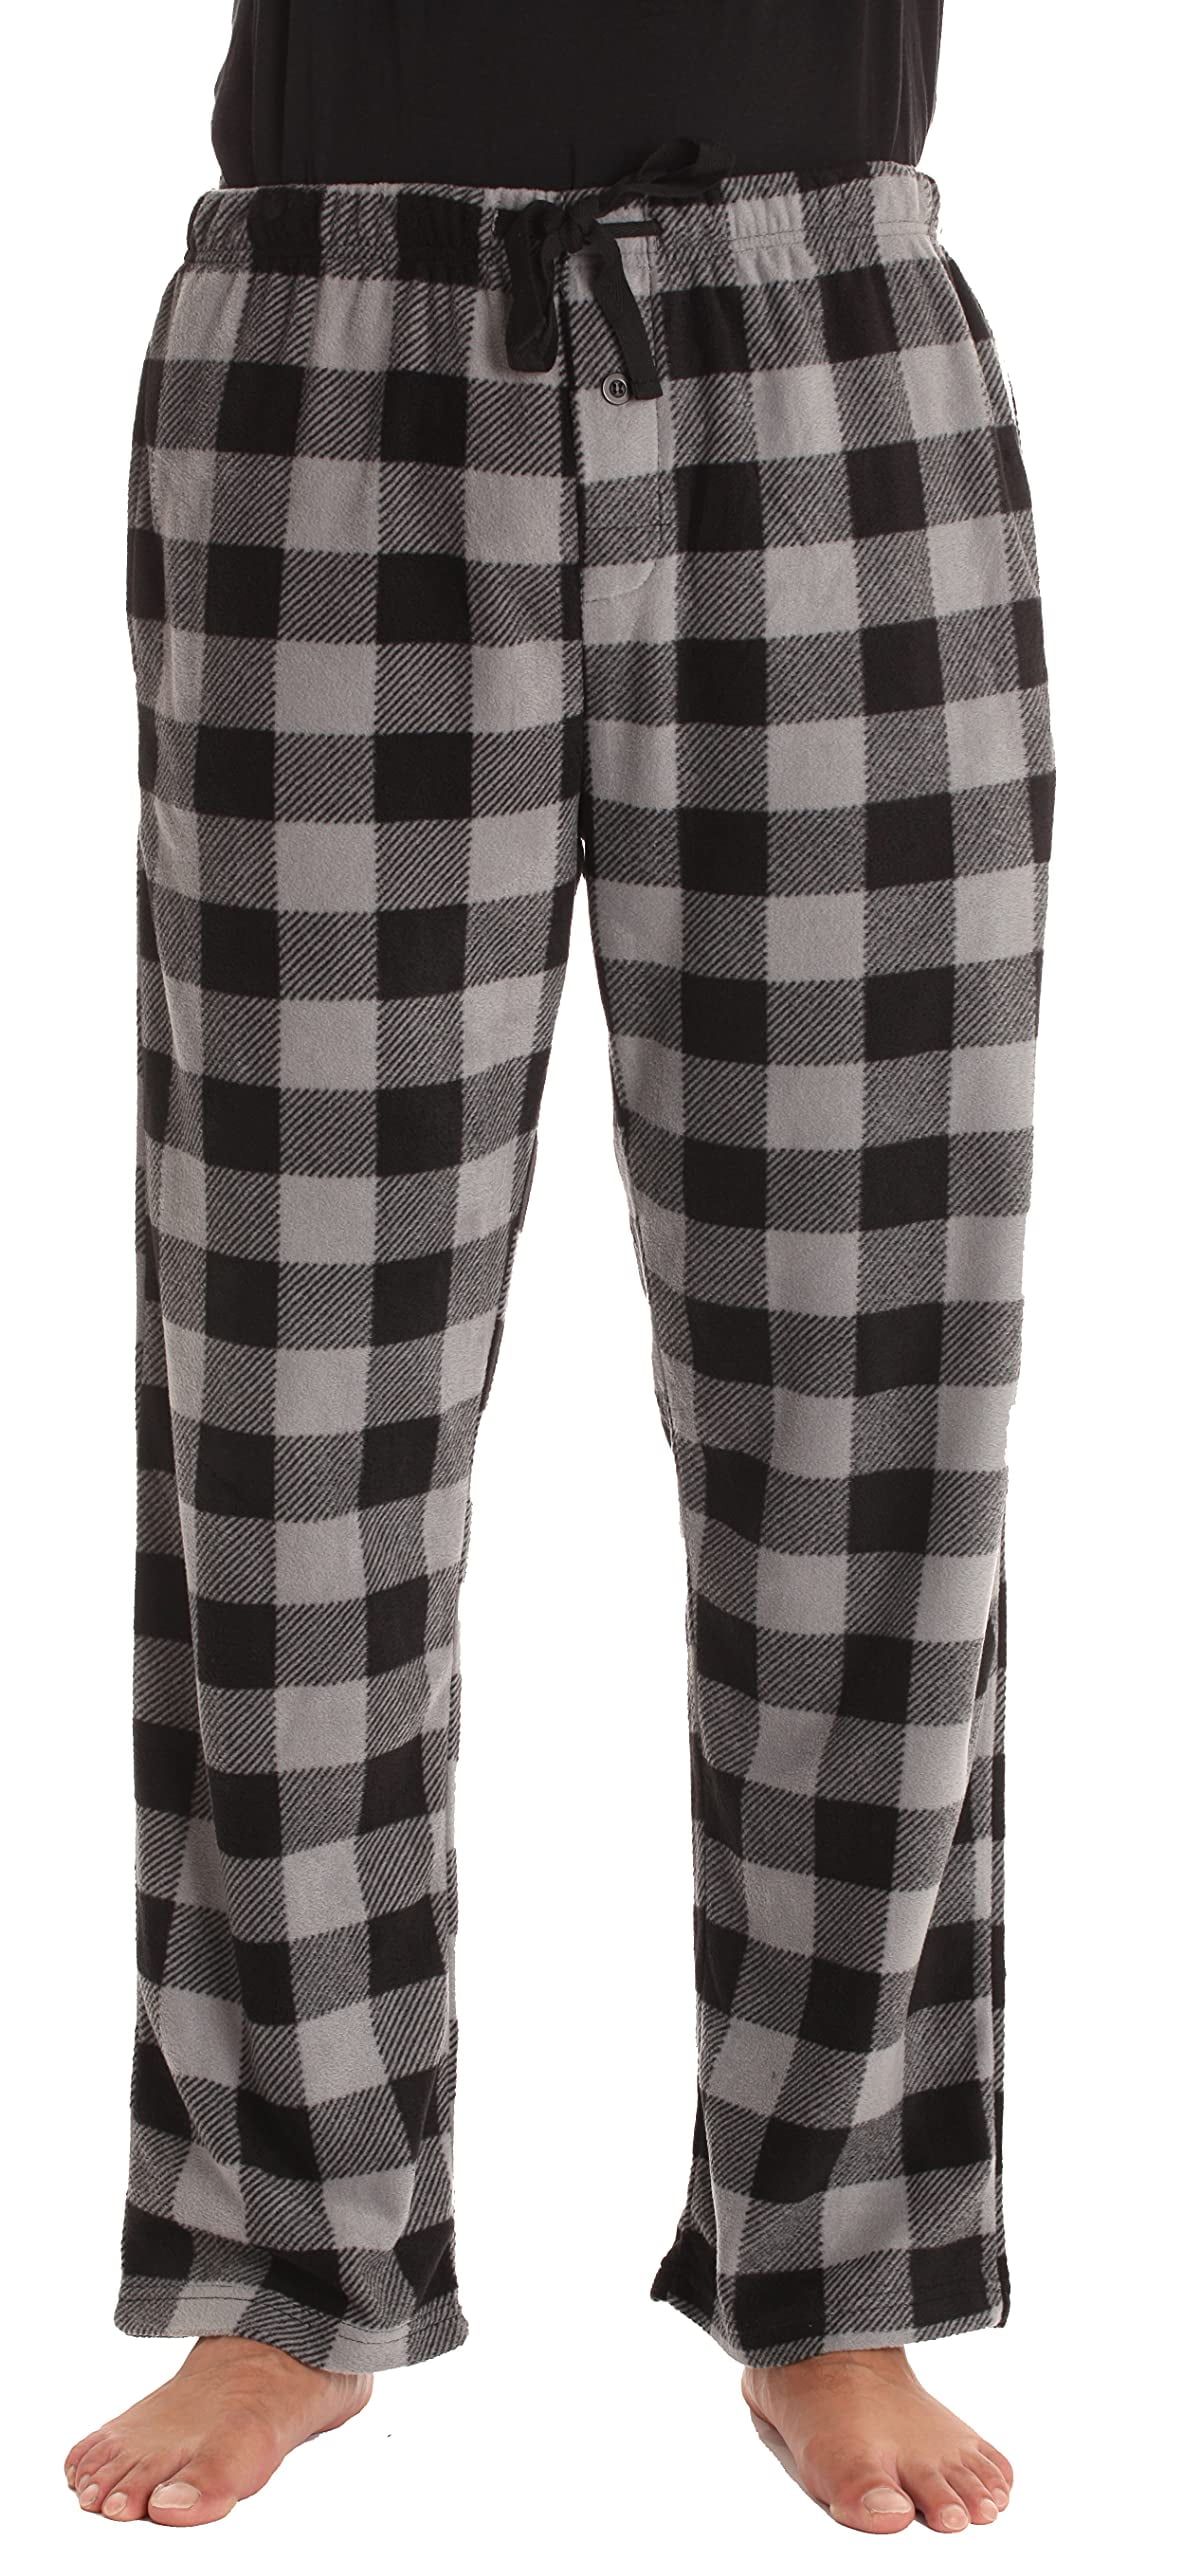 45910-1A-XL #FollowMe Polar Fleece Pajama Pants Set for Men / Sleepwear /  PJs (X-Large, Black Top / White Buffalo Plaid Pant) - Just Love Fashion